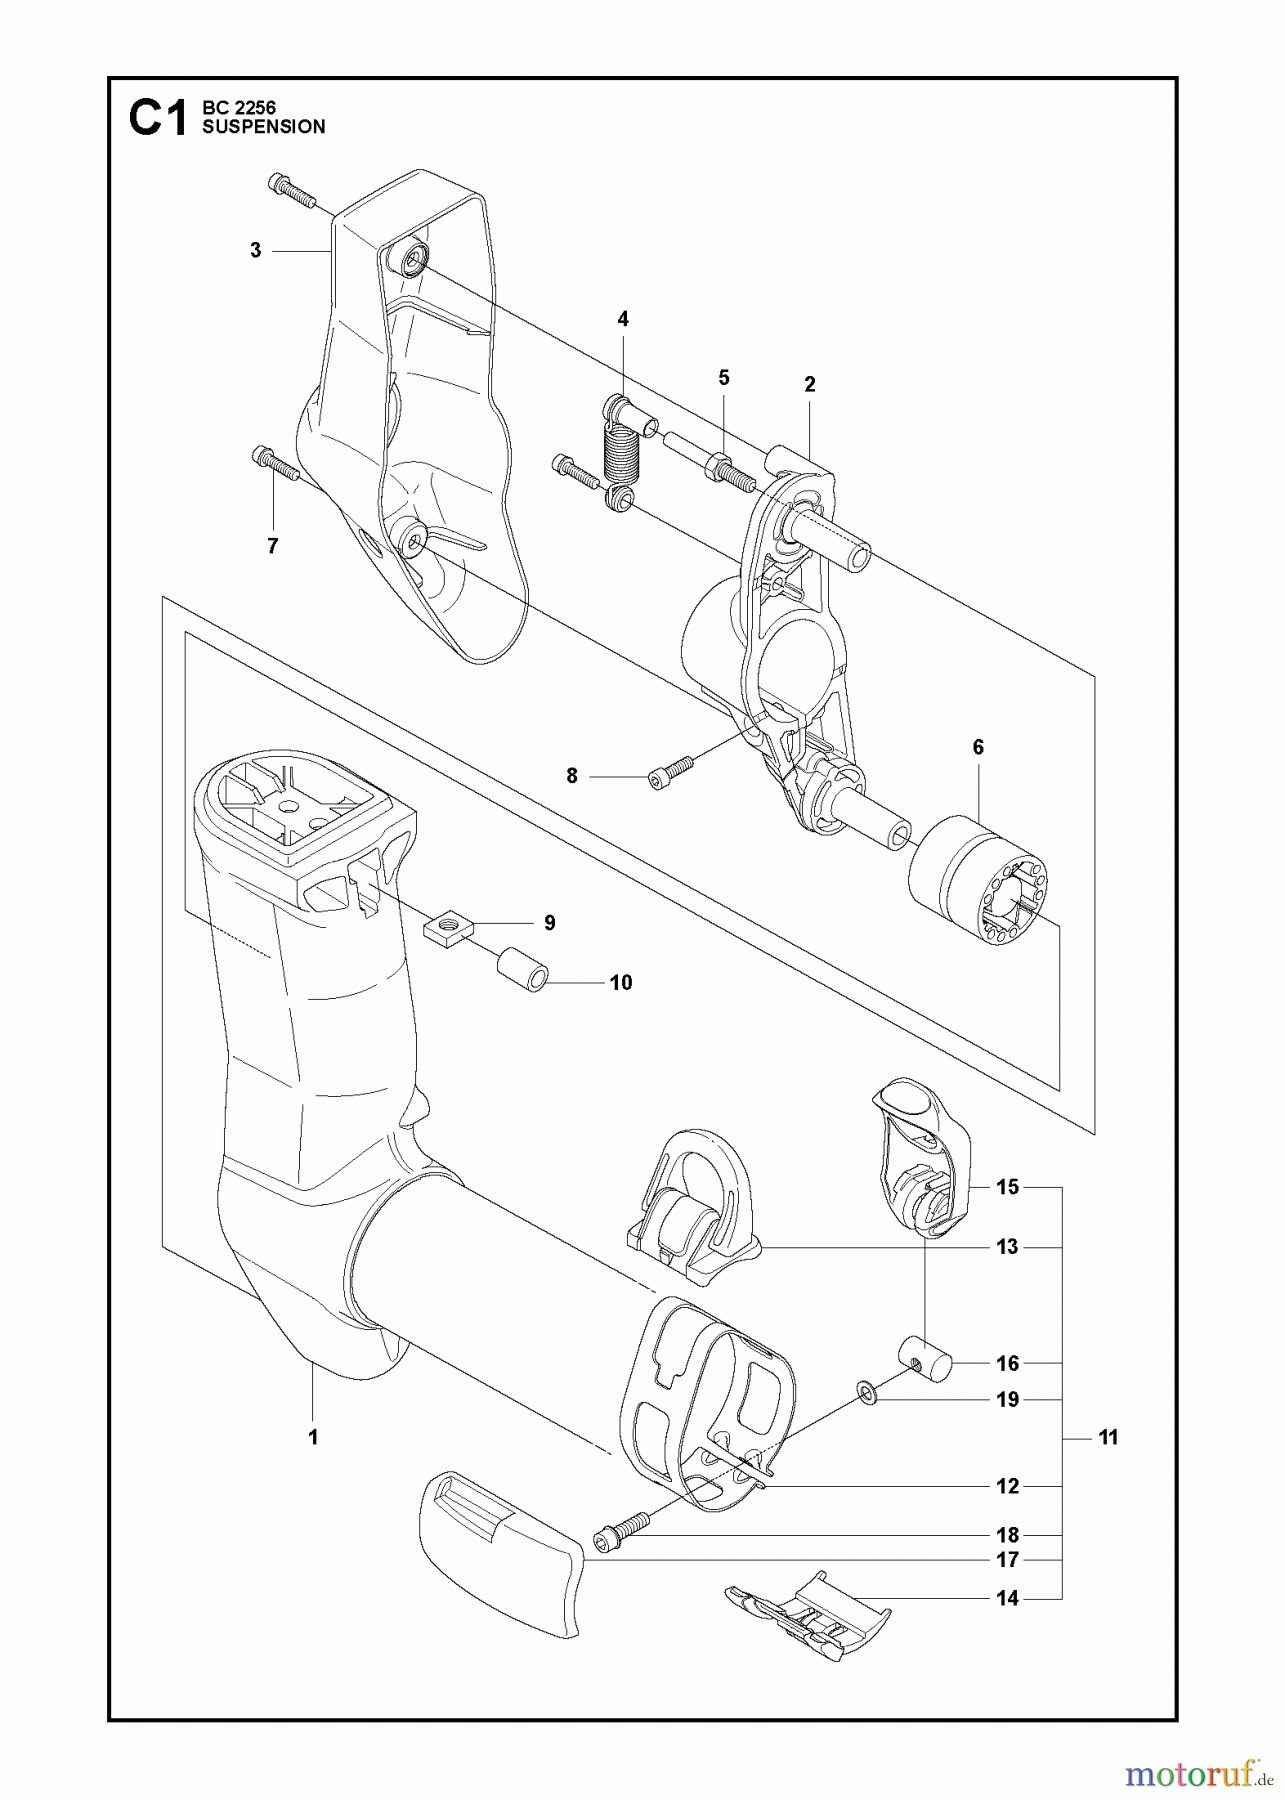  Jonsered Motorsensen, Trimmer BC2256 - Jonsered Brushcutter (2011-01) SUSPENSION